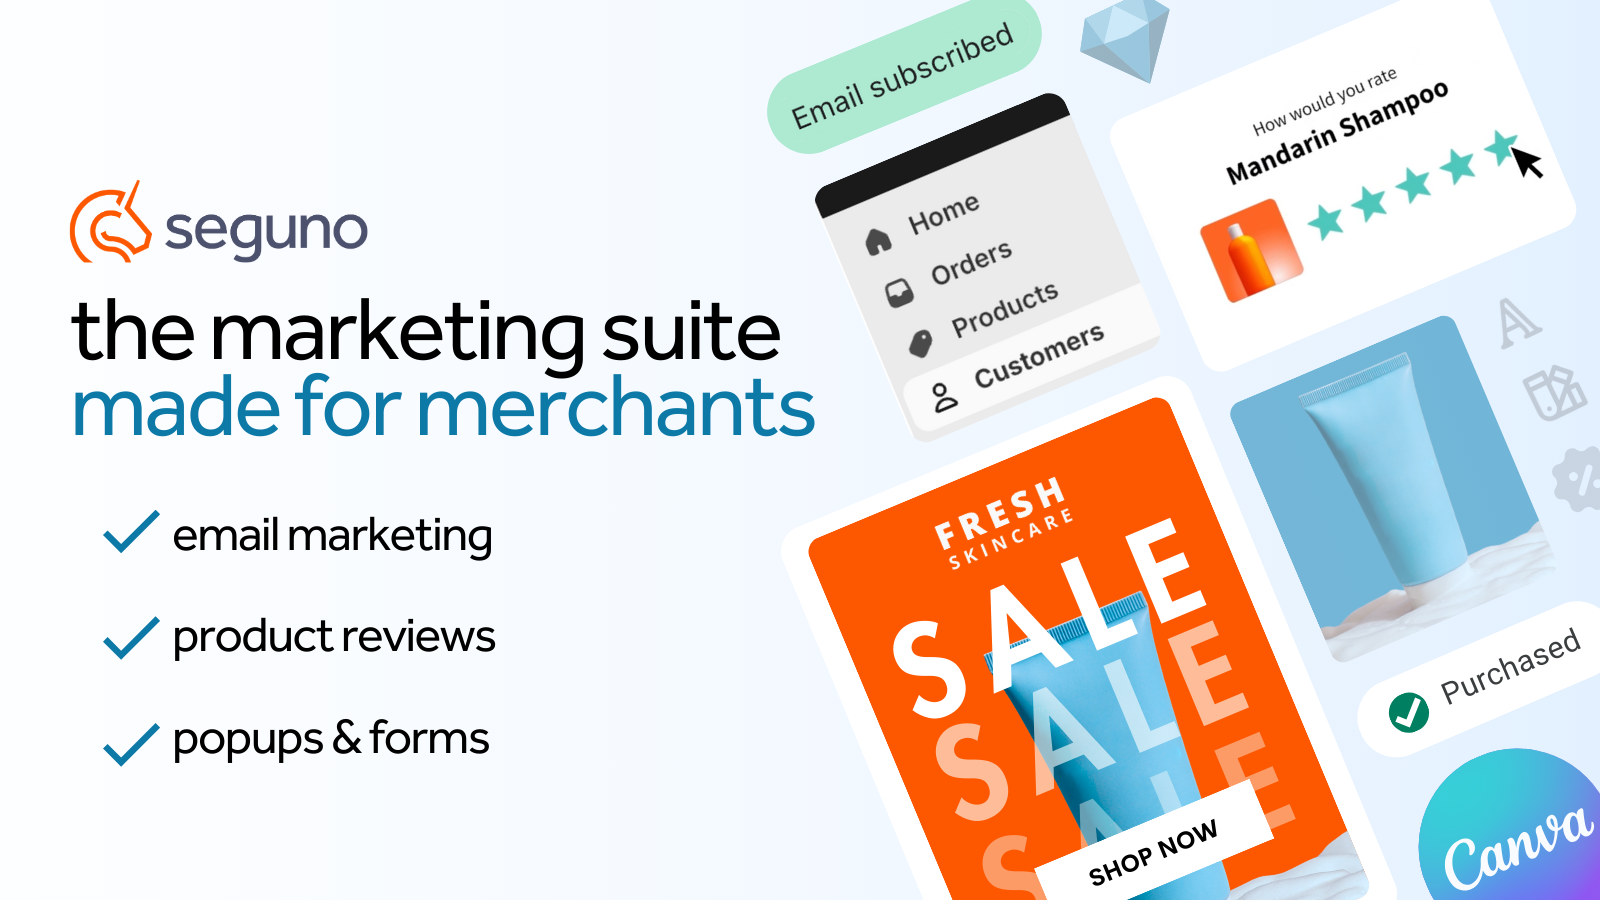 Seguno Marketing Suite: e-postmarknadsföring, produktrecensioner, popups